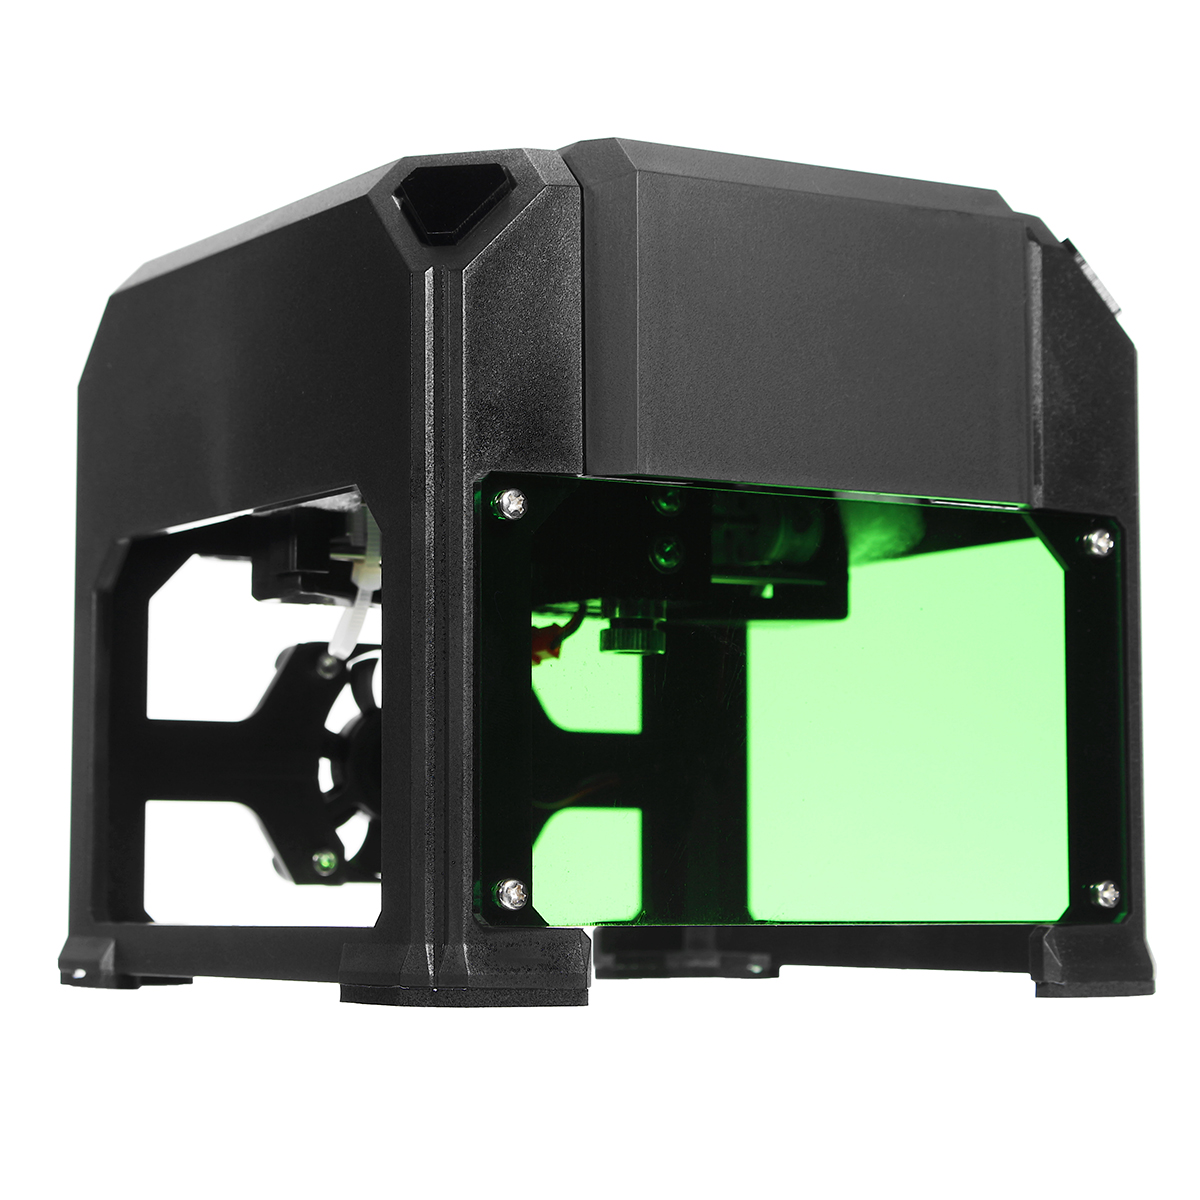 

K3 1000mW Mini Лазер Принтер-гравер DIY Логотип Маркировка USB-гравировальной машины 8x8cm